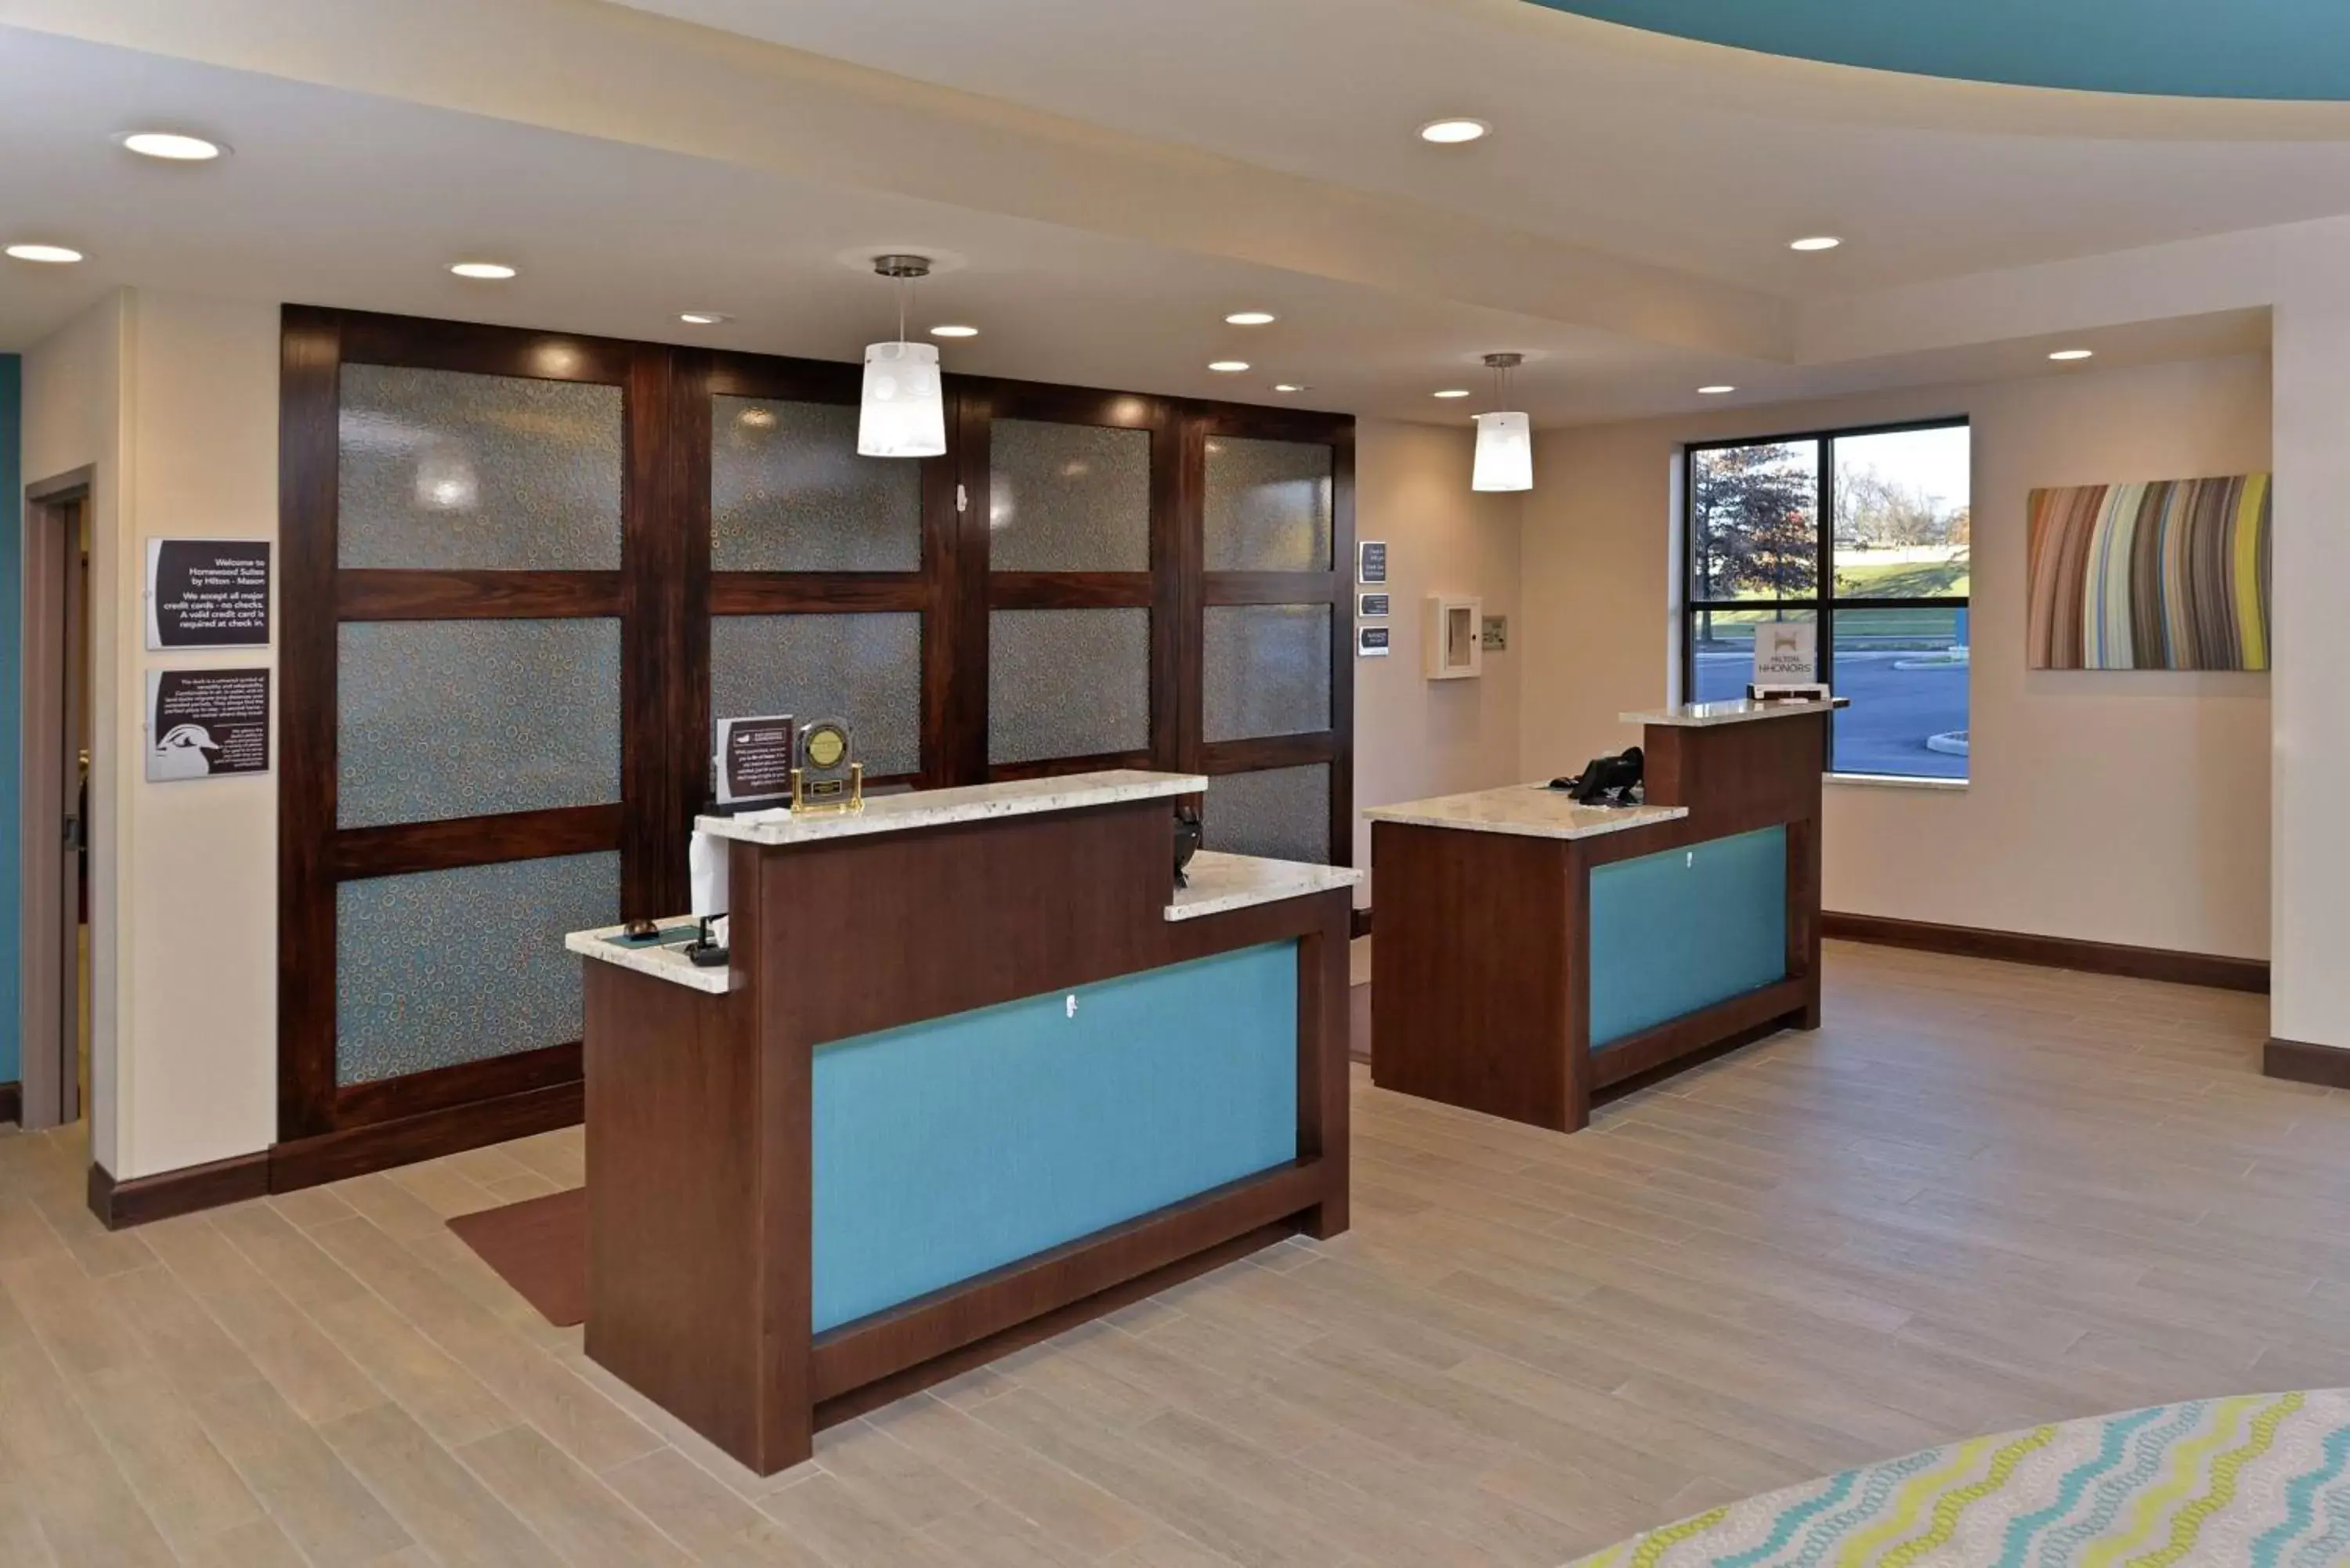 Lobby or reception, Lobby/Reception in Homewood Suites by Hilton Cincinnati/Mason